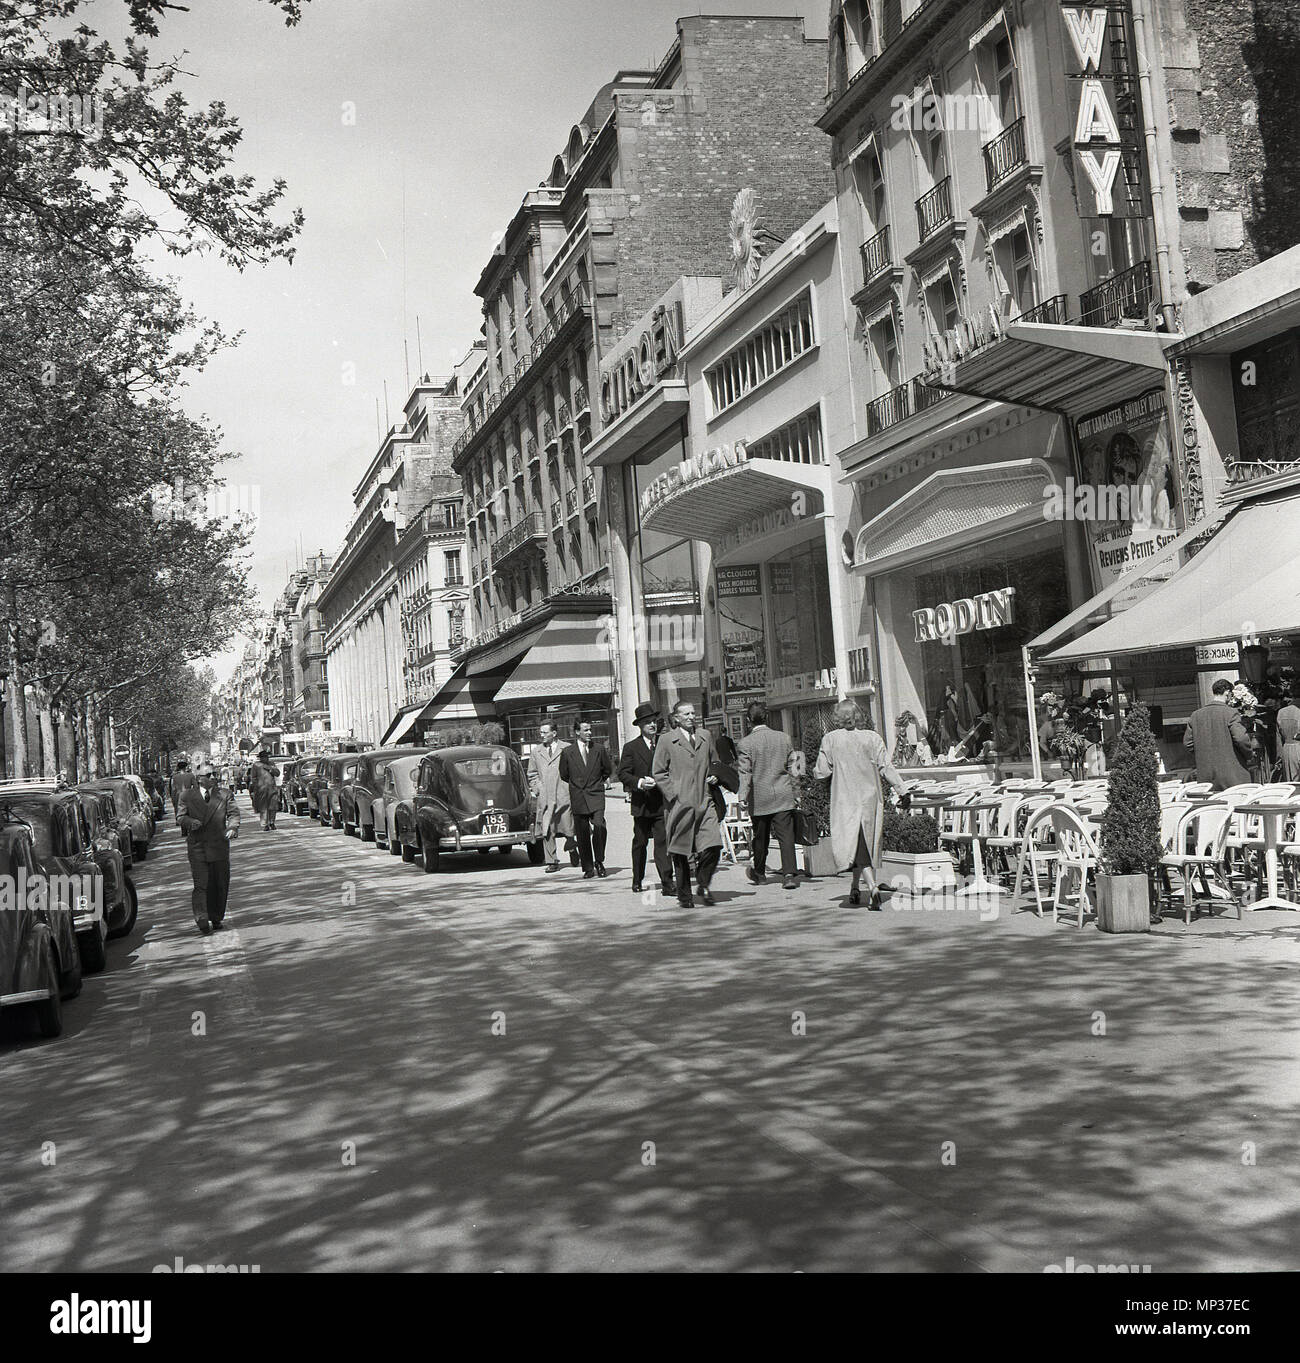 File:Paris Avenue des Champs-Élysées um 1900.jpg - Wikimedia Commons